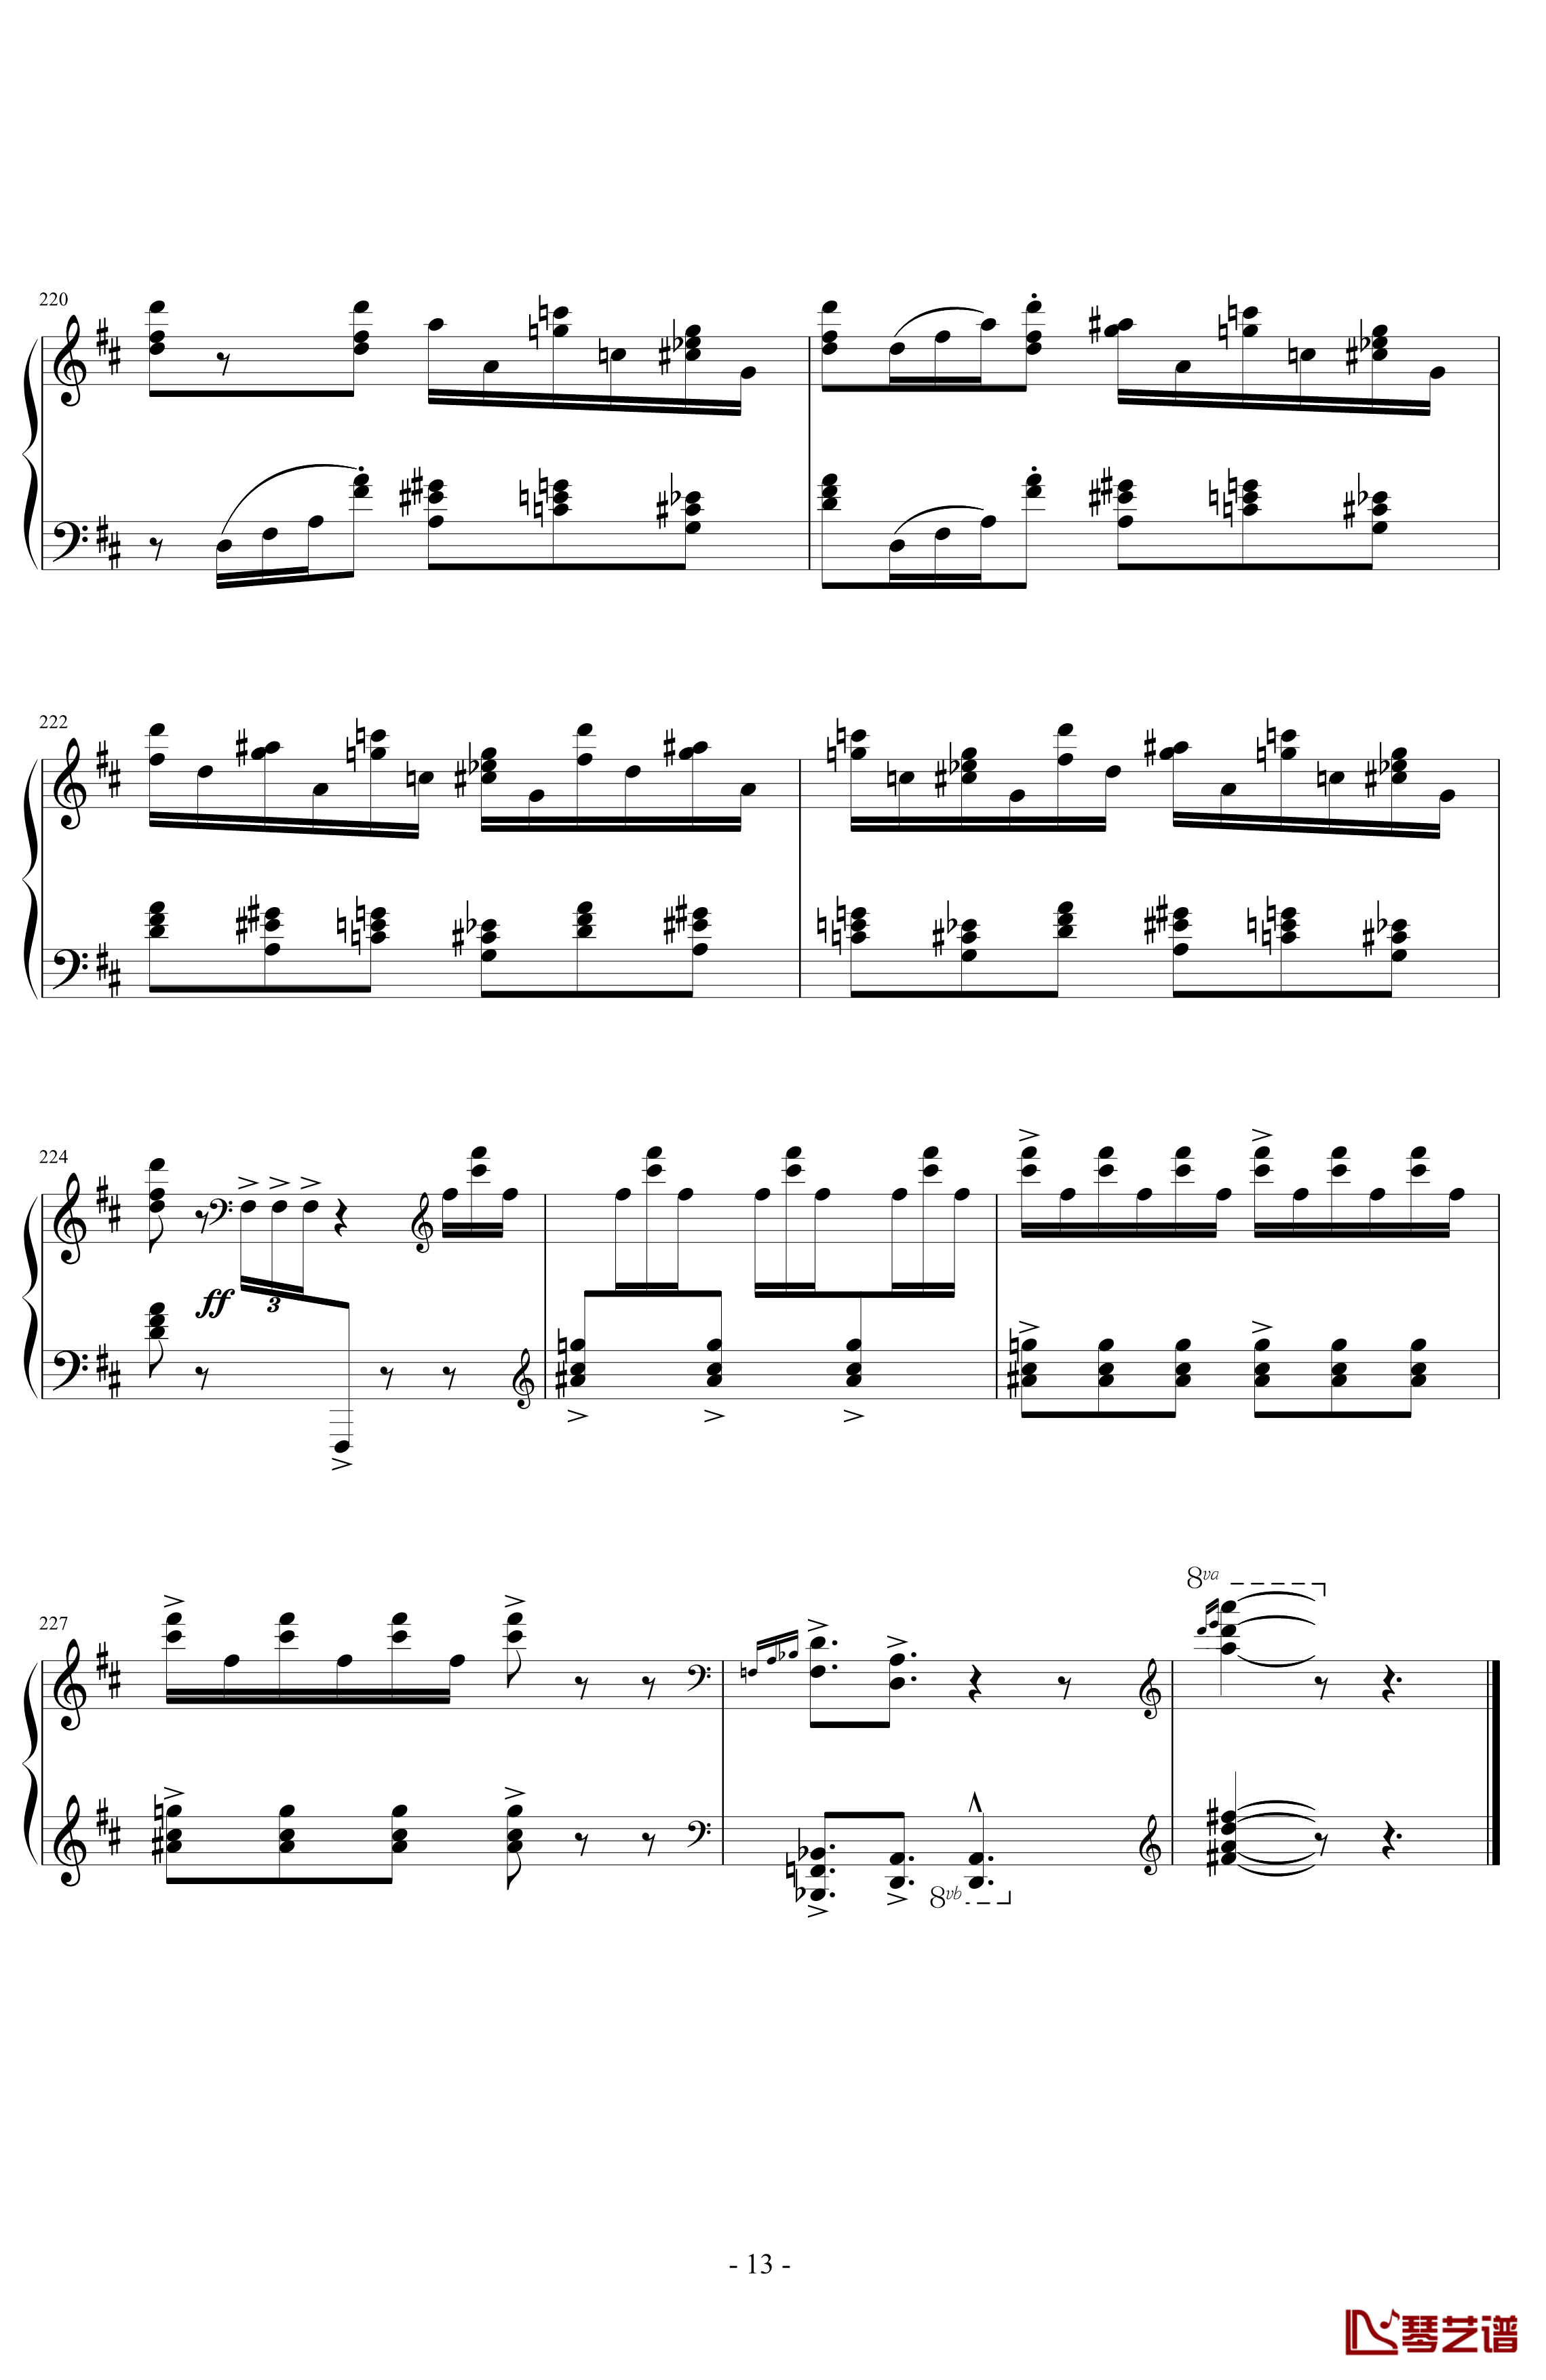 丑角的晨歌钢琴谱-组曲第4首-拉威尔-Ravel13